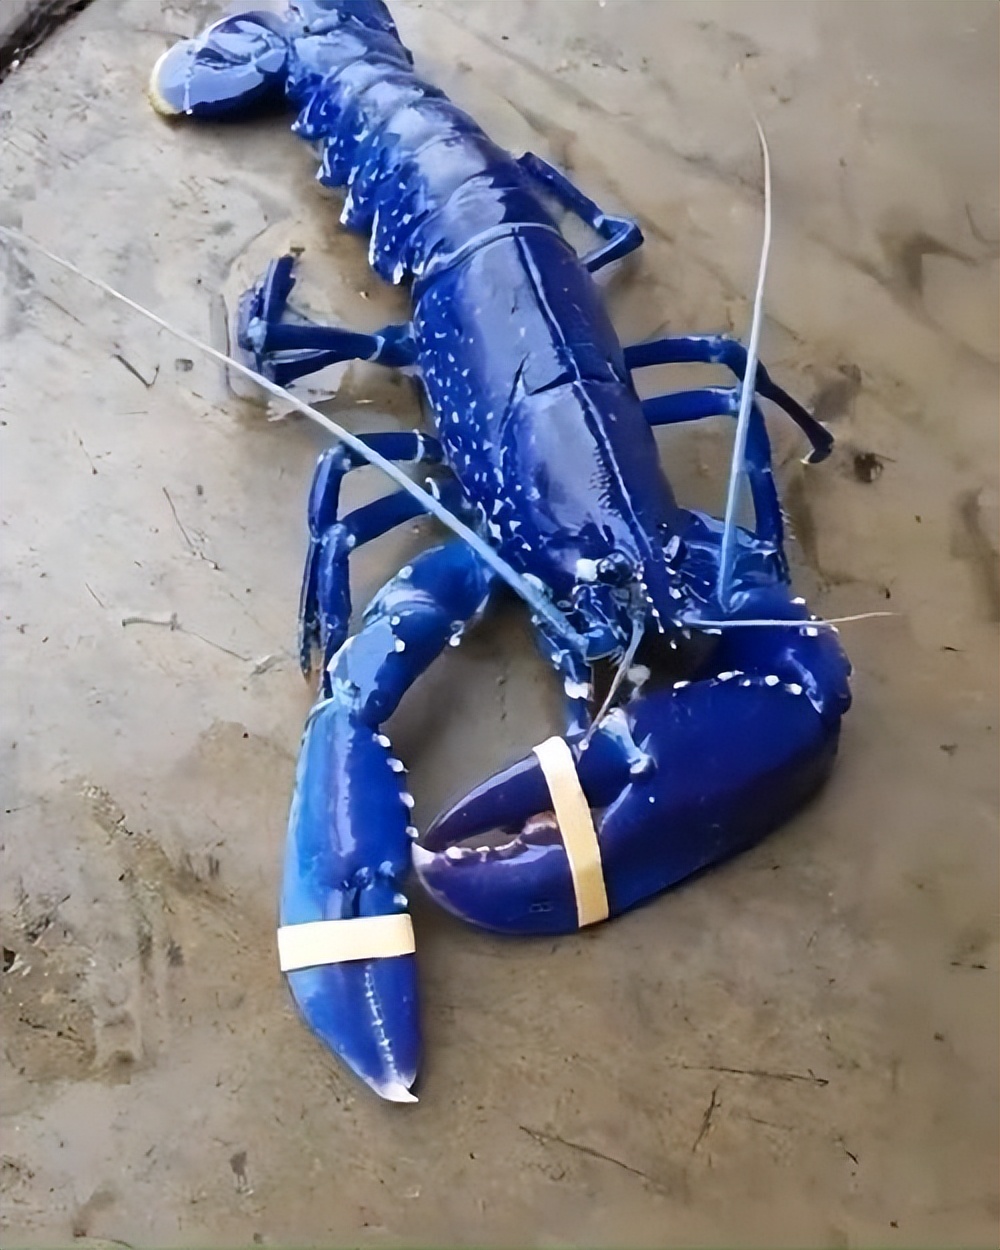 法国人捕获到蓝龙虾为什么要给尾巴上做记号,还把它们再放回大海